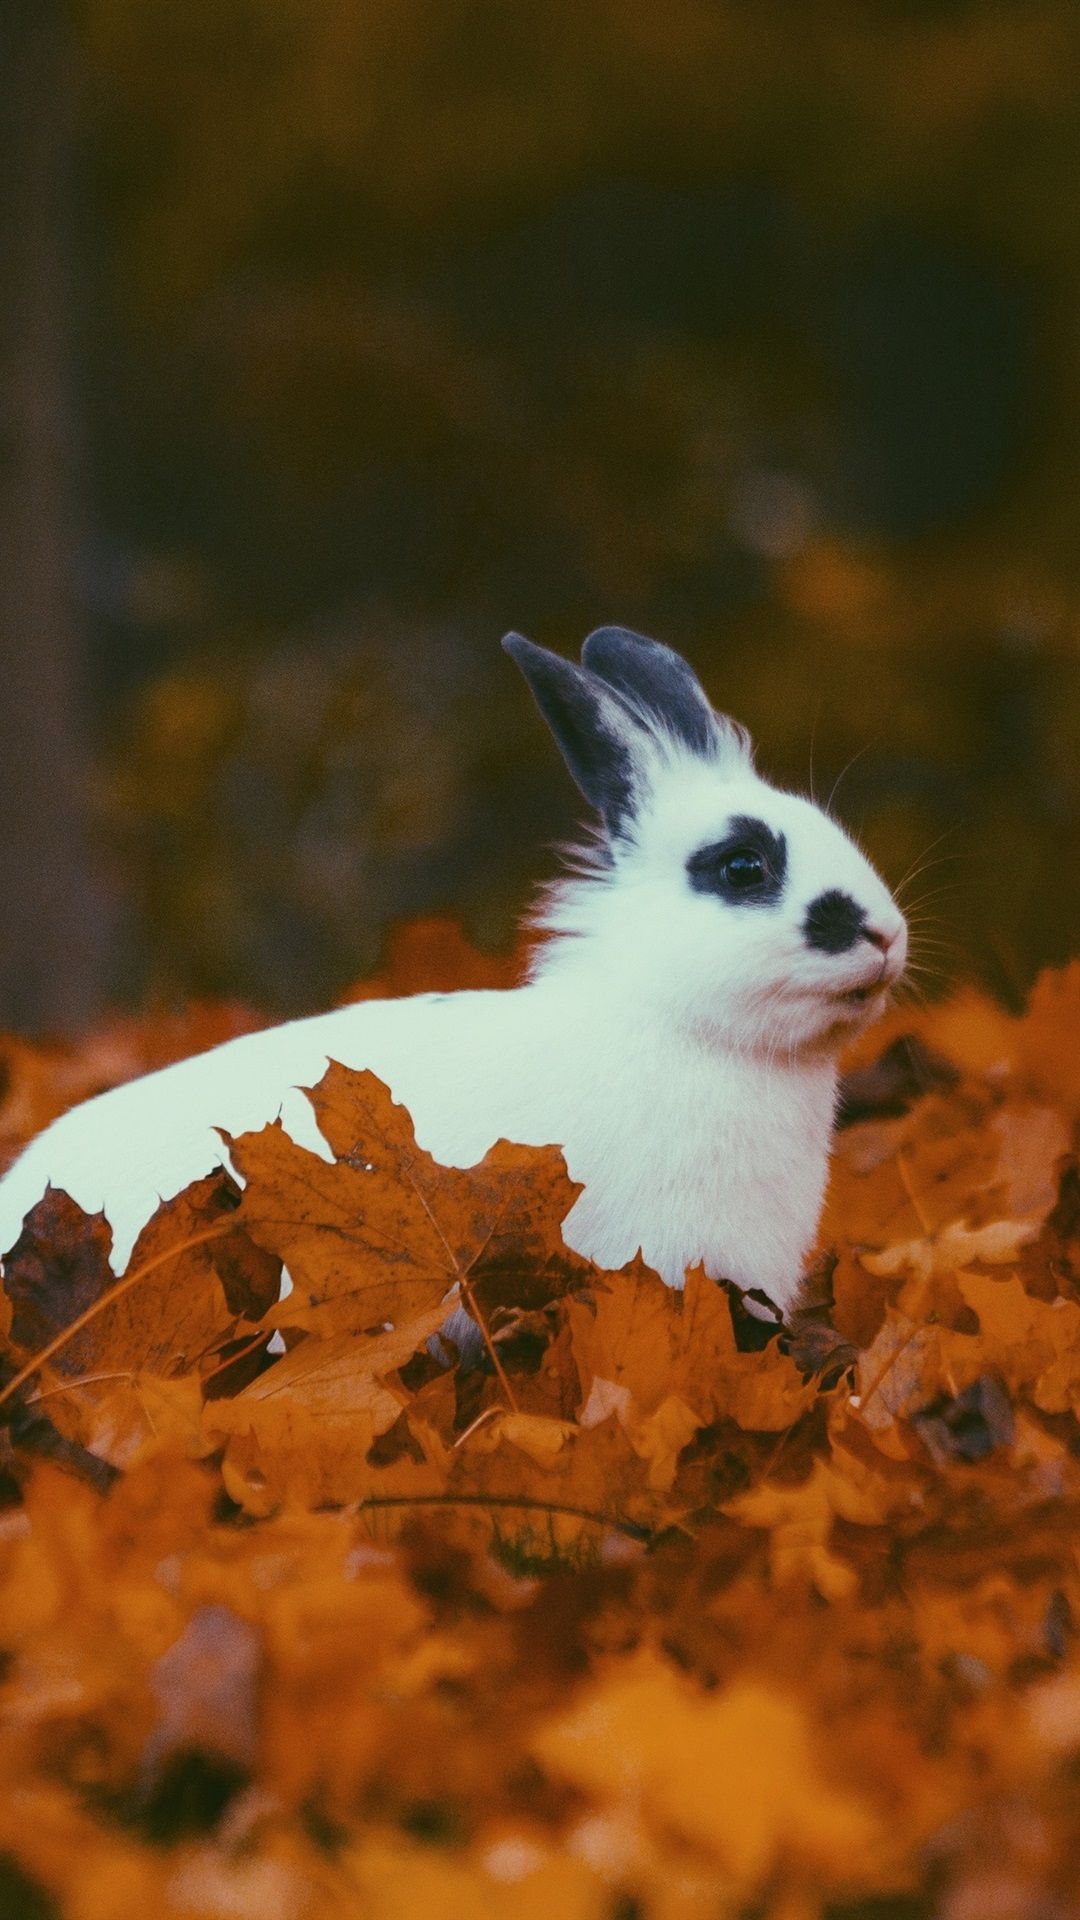 بک گراندی جذاب از خرگوش سفید خال خالی میان برگ های پاییزی